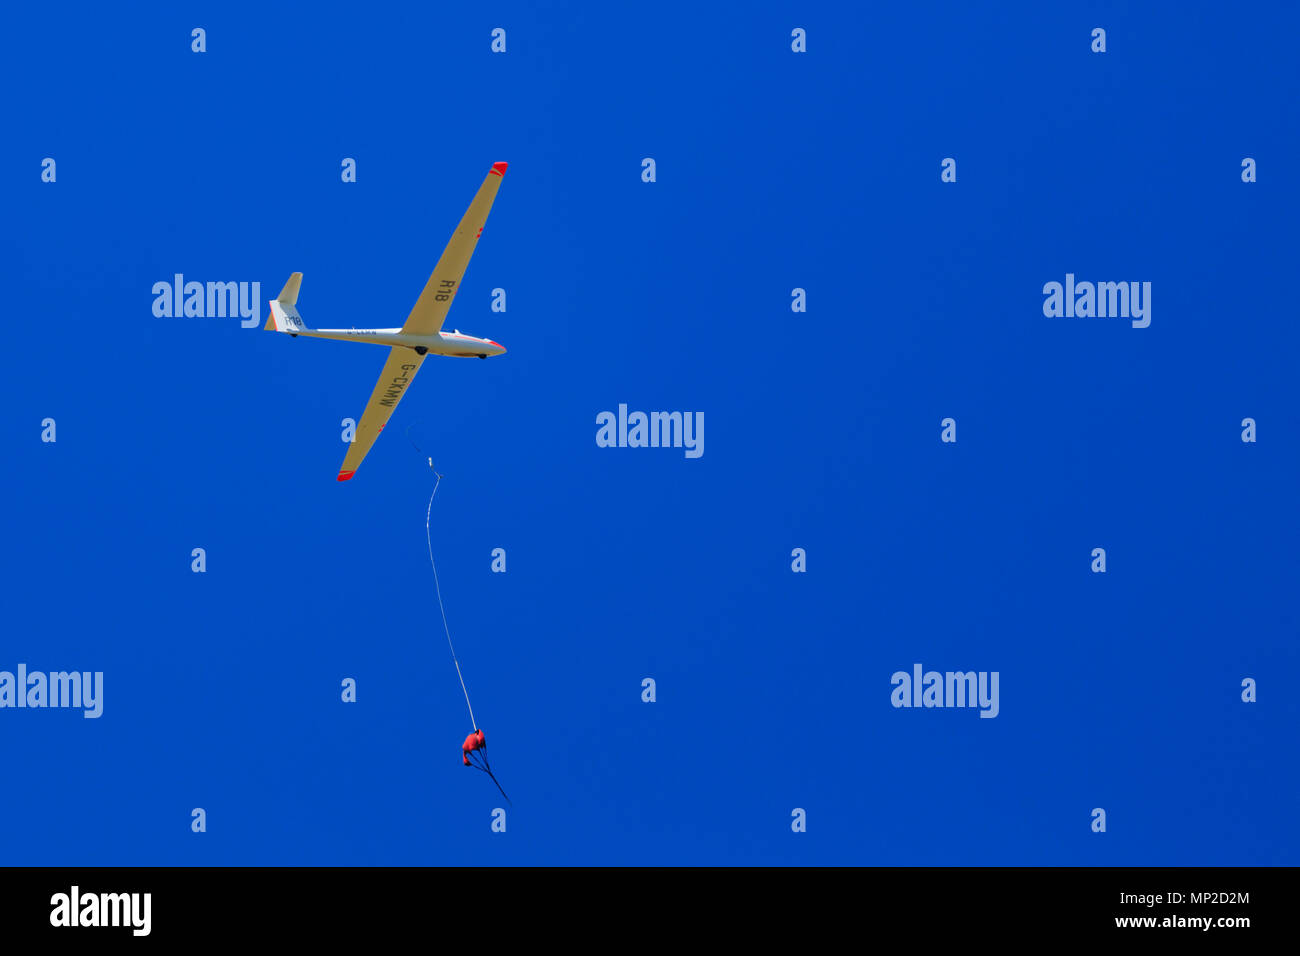 Alexander Schleicher ASK21 parapendio della Royal Air Force di scorrevolezza e di soaring Association, RAFGSA, rilasciando da un verricello di lancio in un cielo blu chiaro. Foto Stock